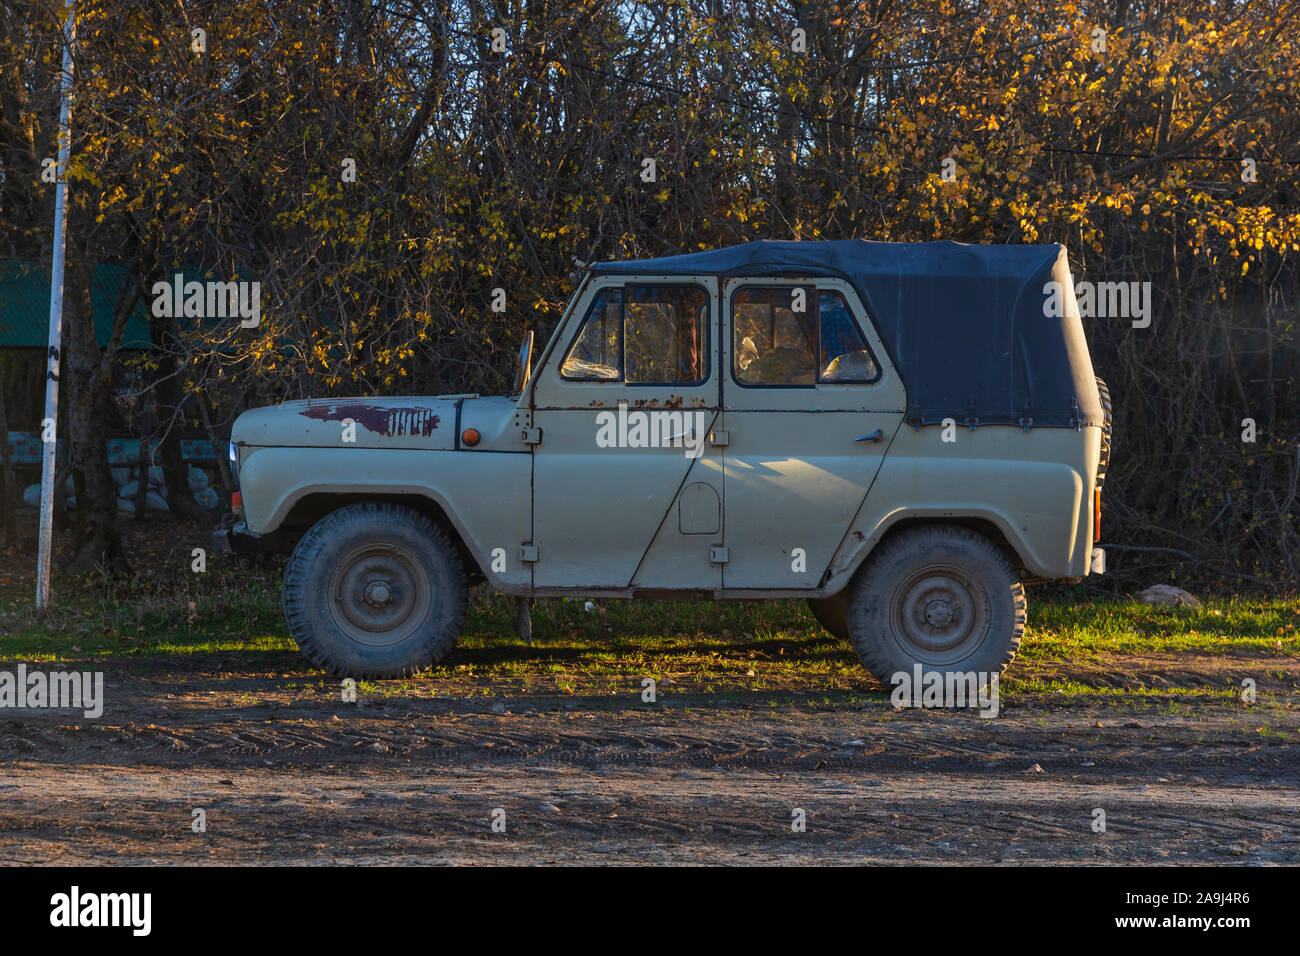 Azerbaijan, Shabran - November 8, 2019: Soviet UAZ SUV on a mountain road Stock Photo